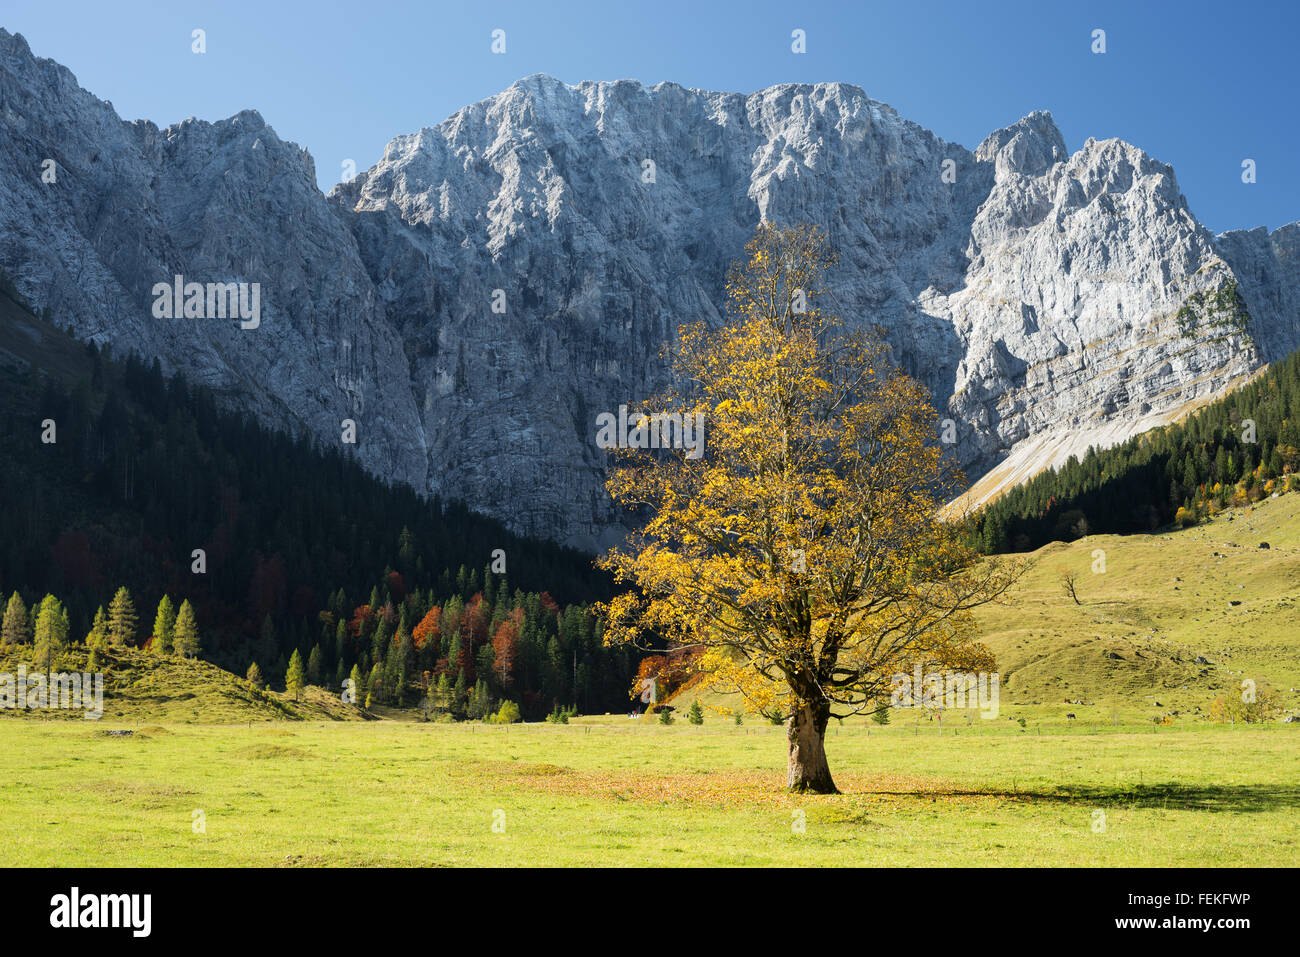 Platane (Ahorn) umgeben von Ahorn-Wälder, grüne Wiesen und die Klippen und Felsen des Karwendelgebirge, Tirol, Österreich Stockfoto